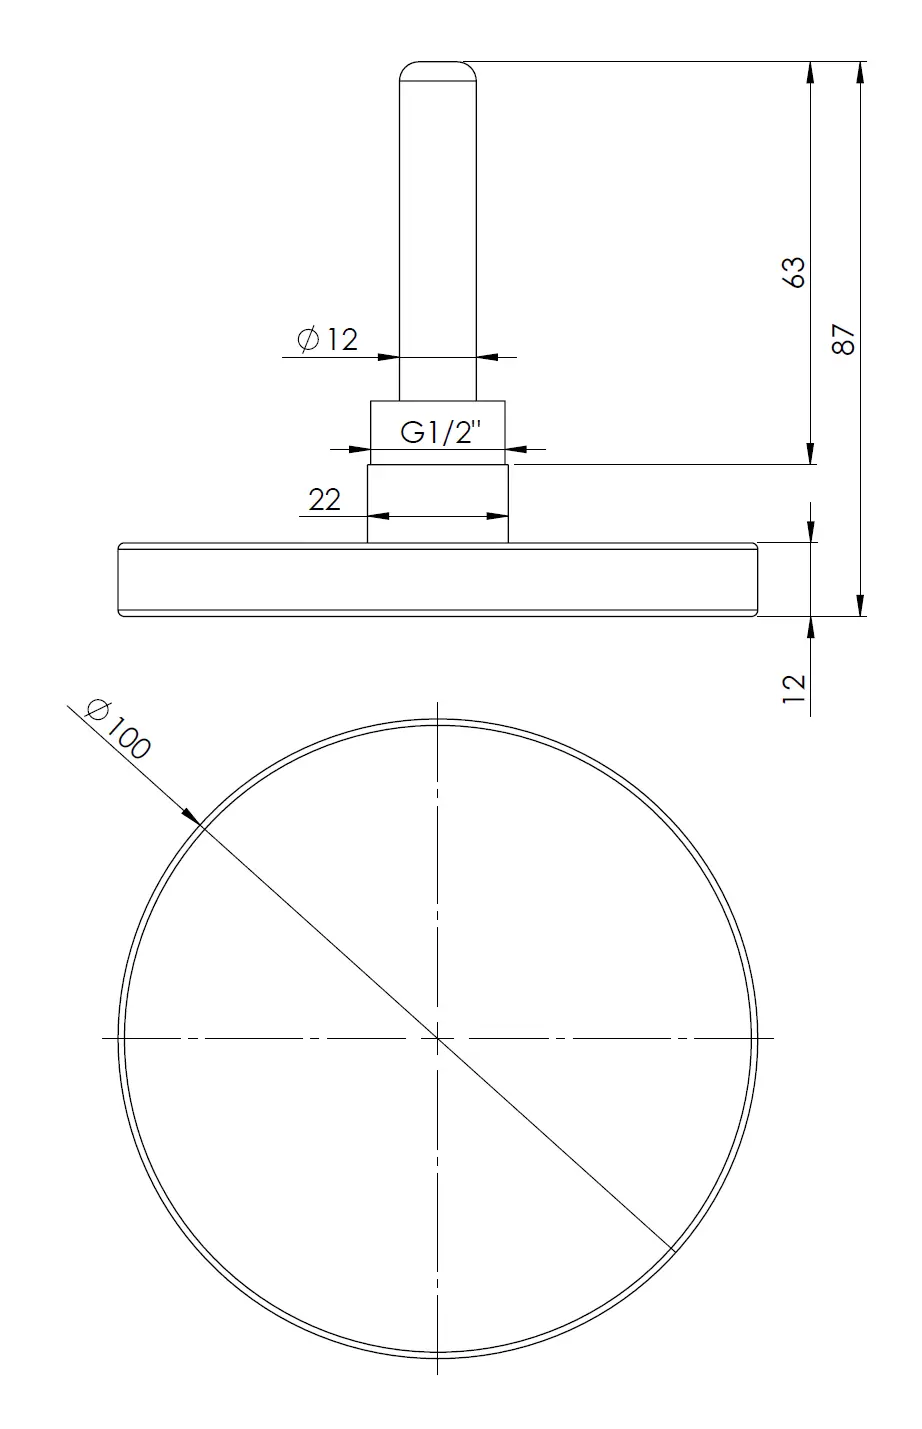 Termometr bimetaliczny BiTh 100, fi100 mm, 0÷160°C, L 63 mm, G1/2", ax, kl. 2 - budowa